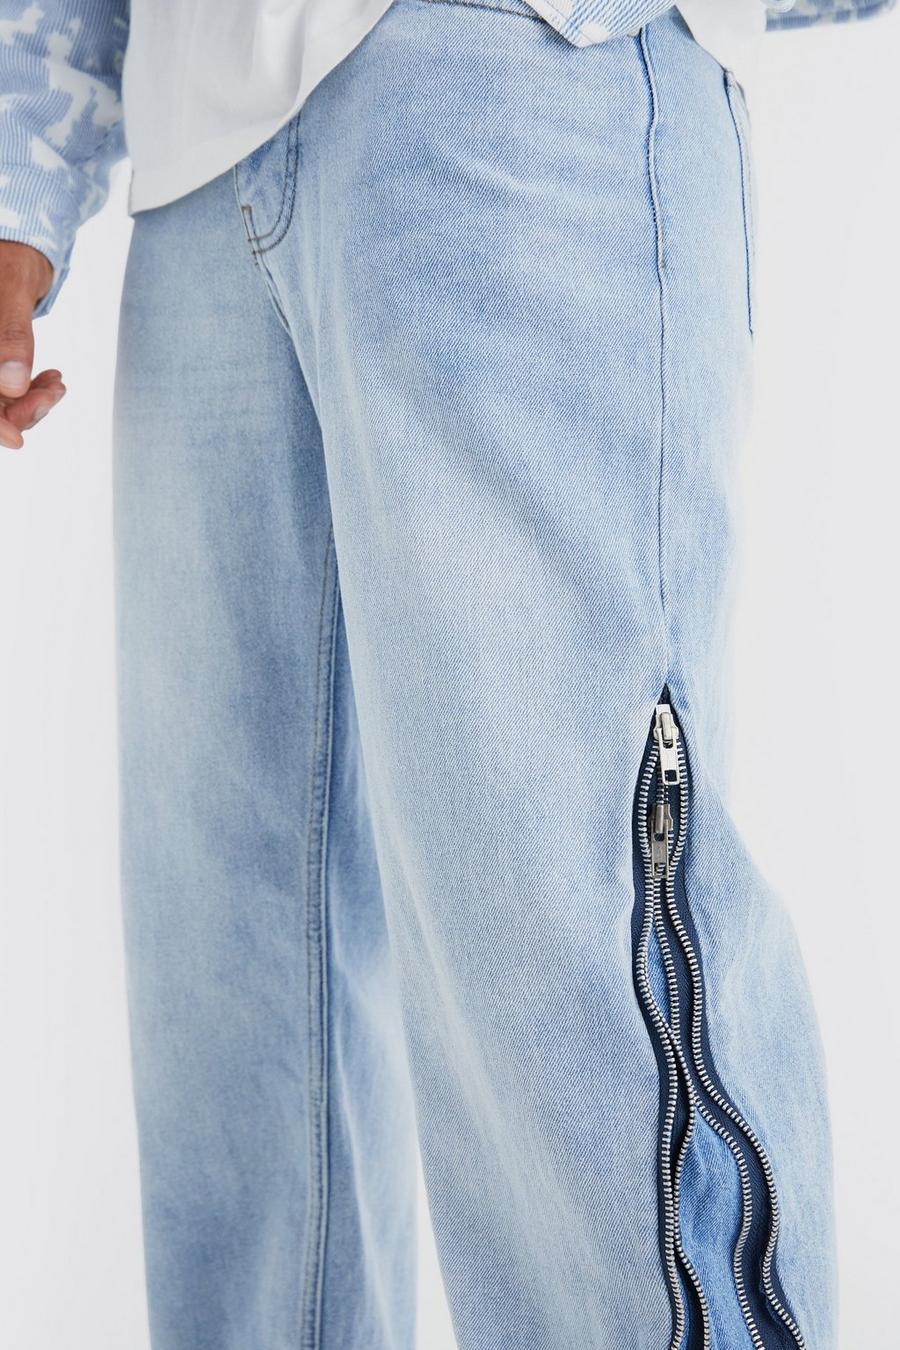 niebieskie spodnie jeans guziki kieszenie zamki